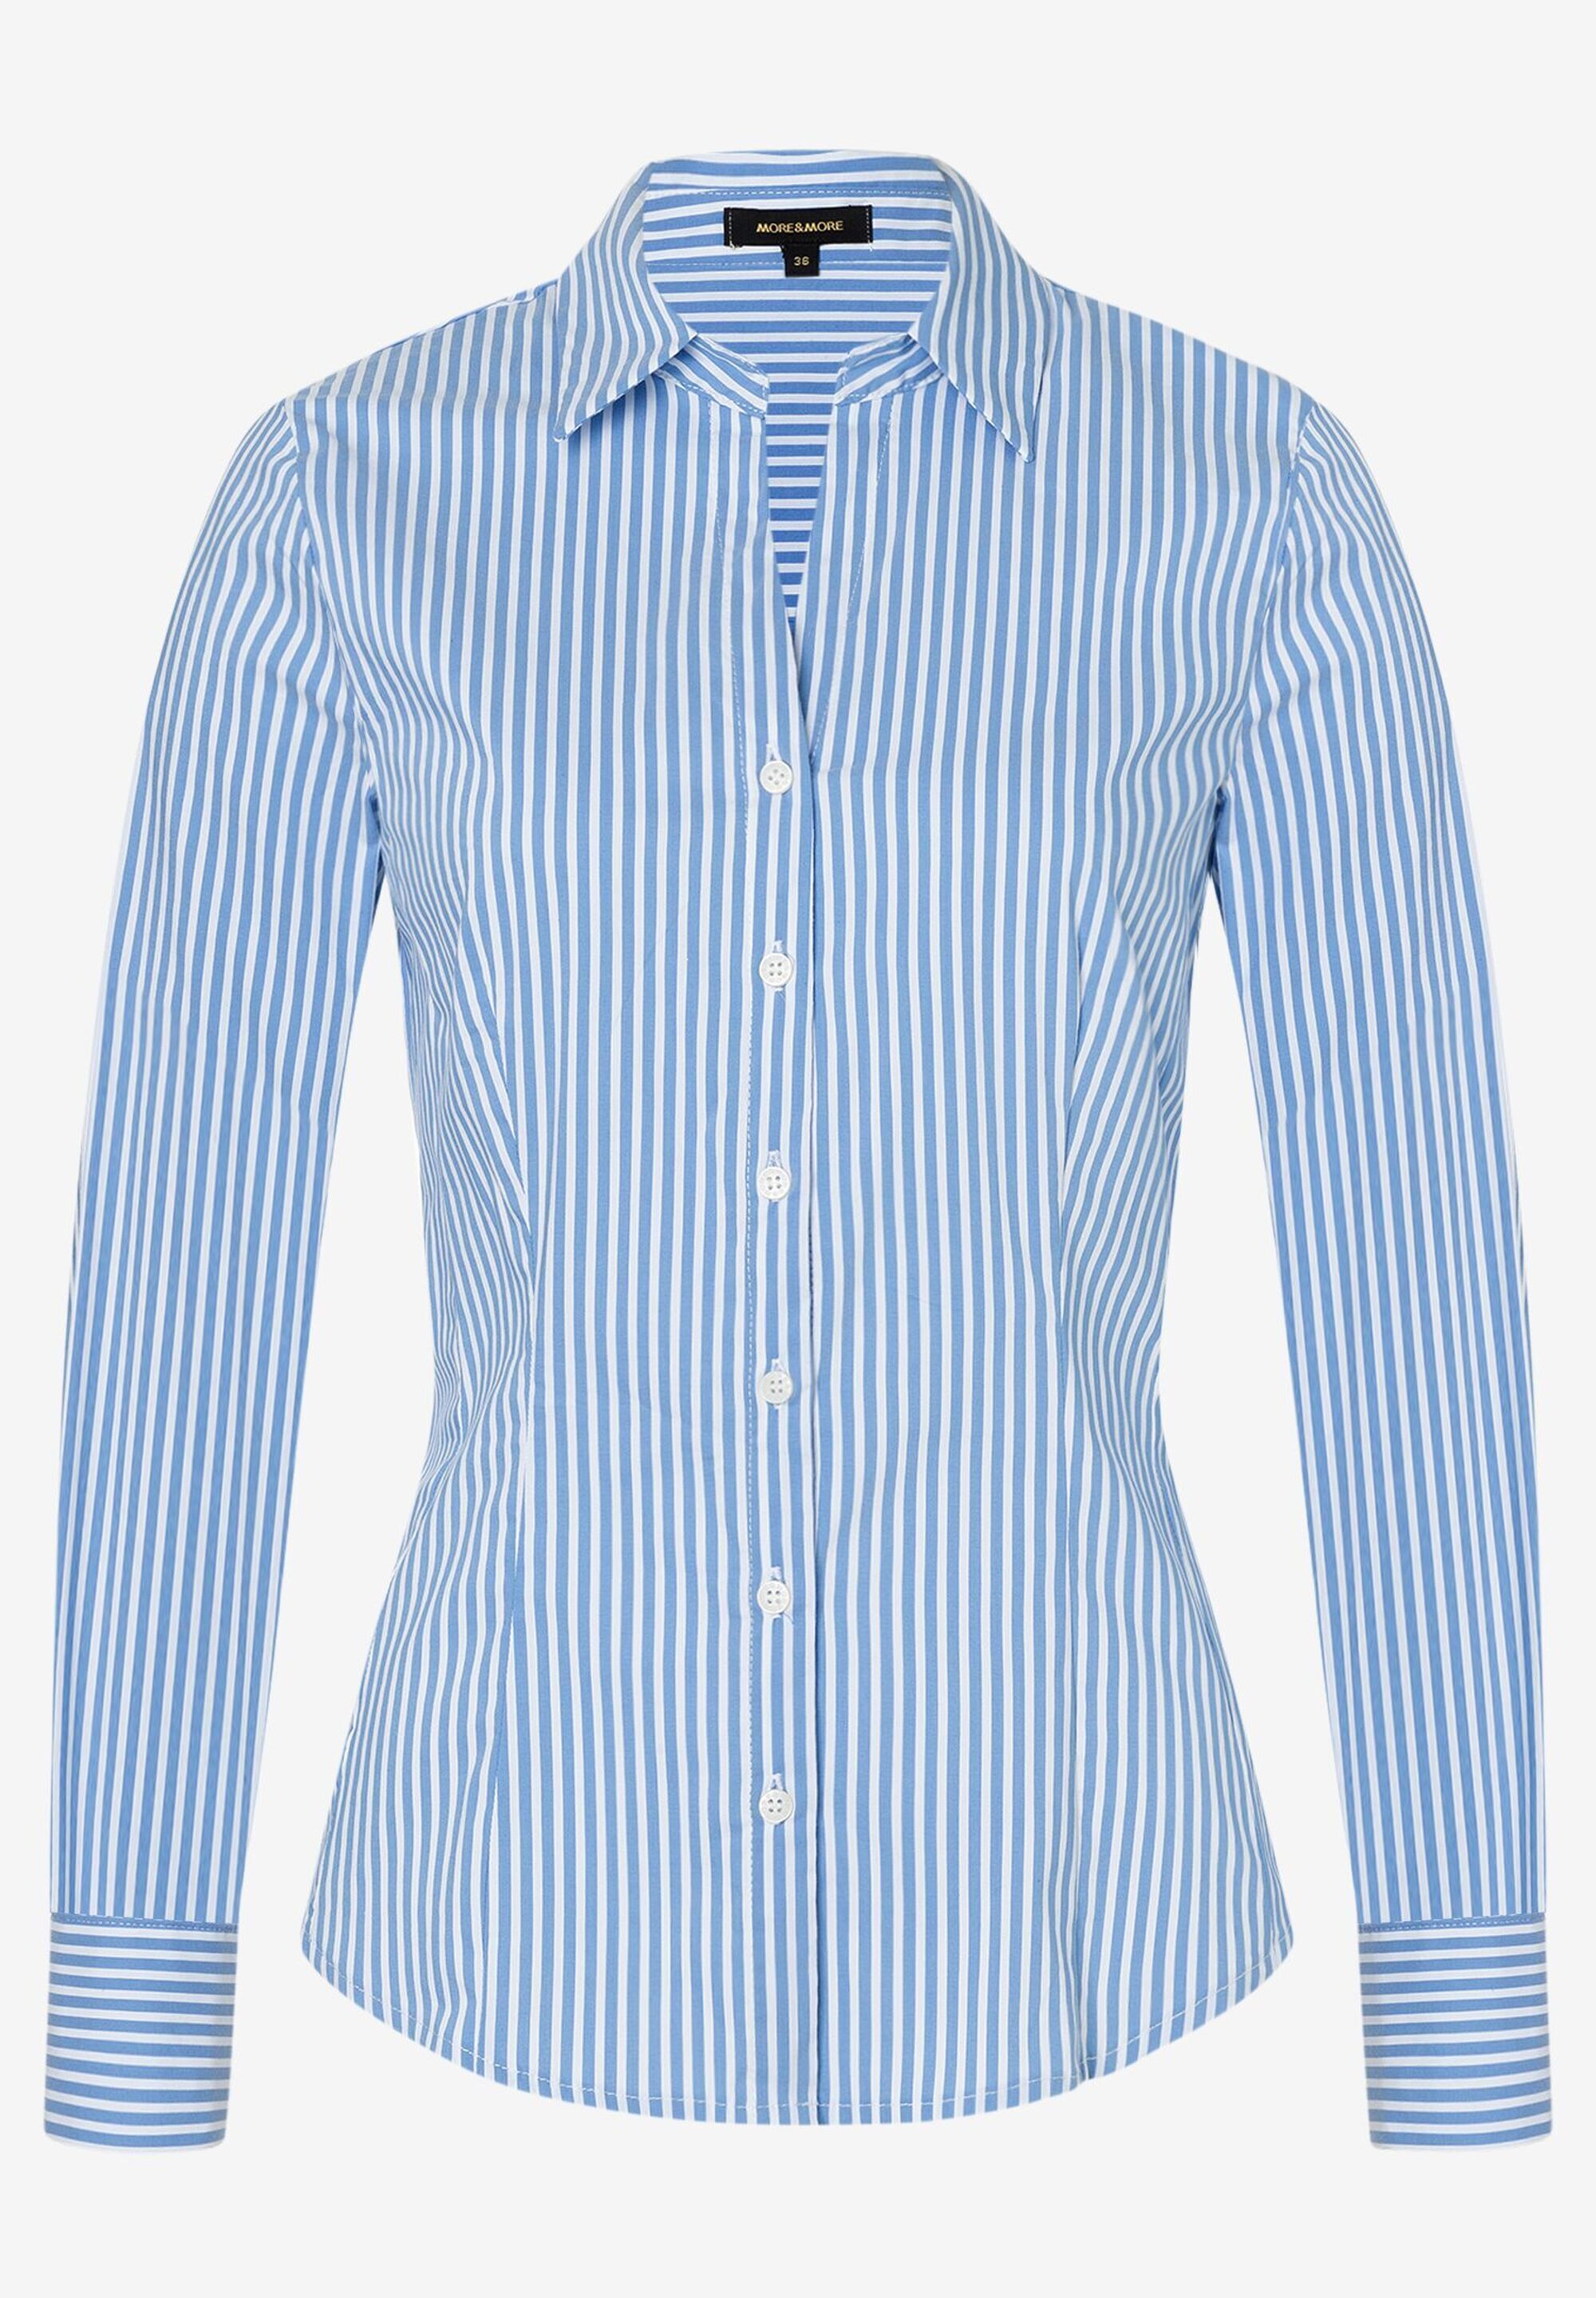 Hemdbluse mit Streifen, Onlineshop MORE Der MORE blau/weiß, & offizielle Frühjahrs-Kollektion 